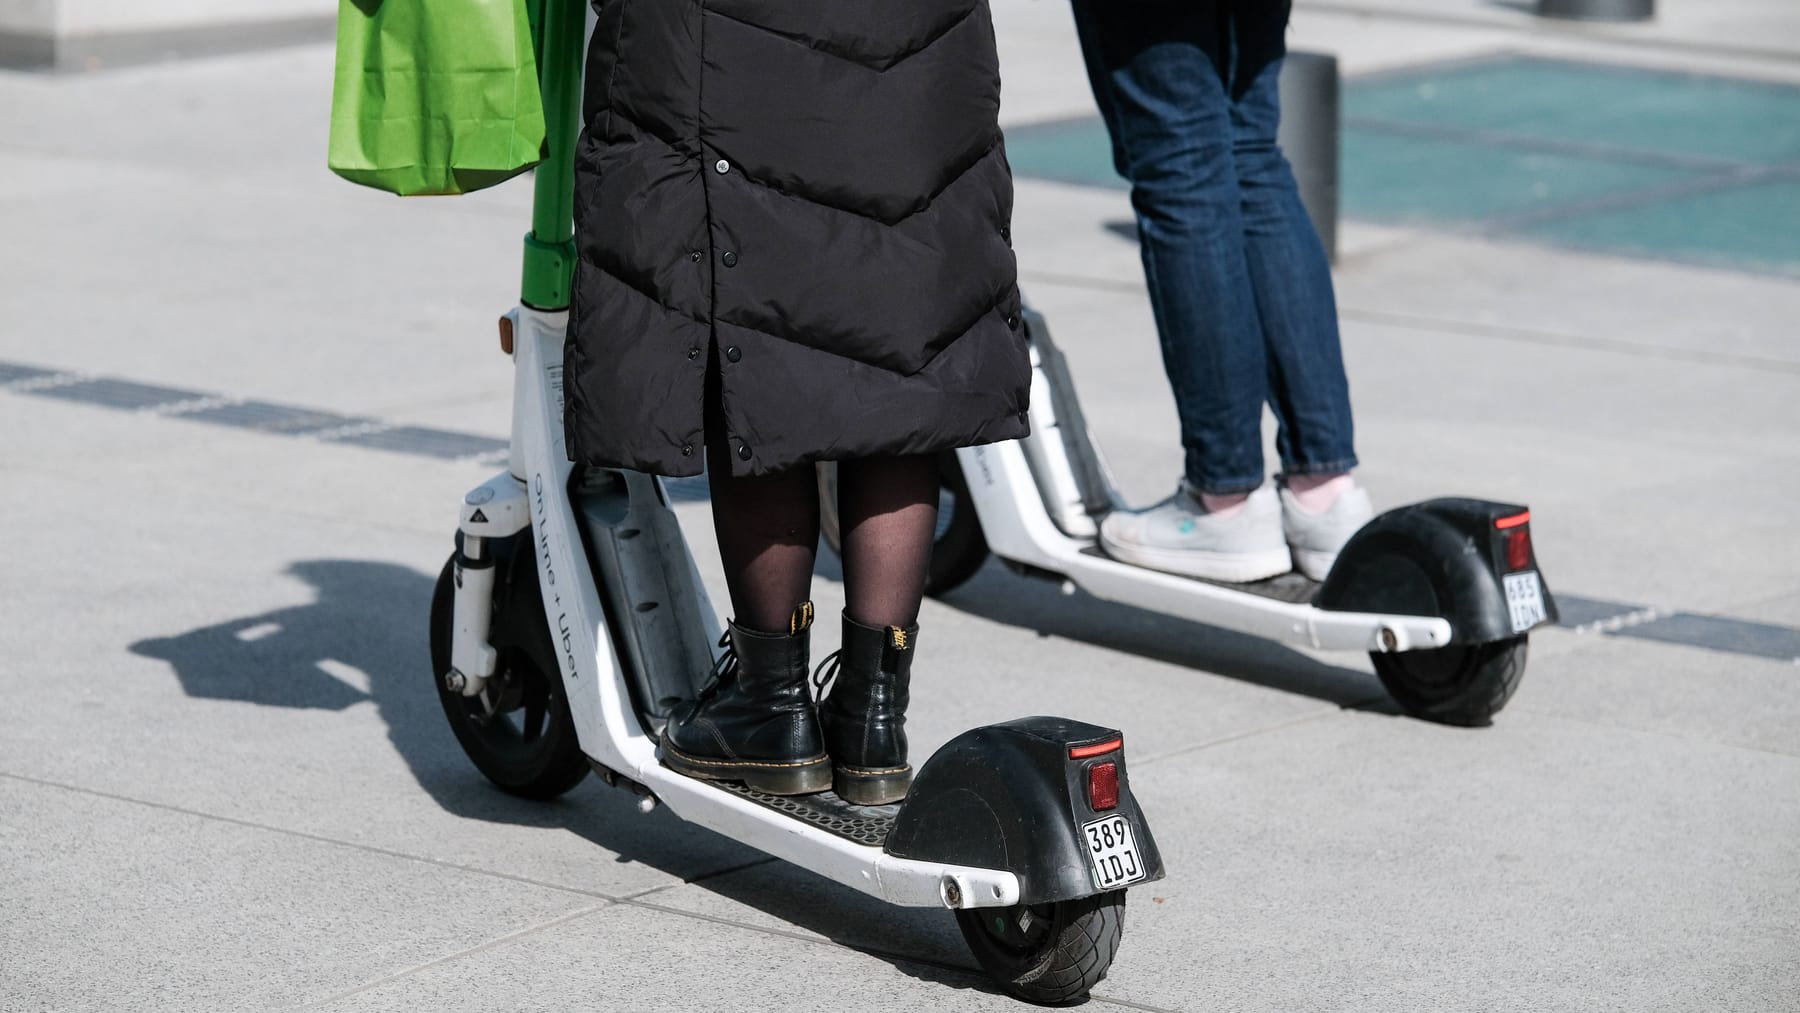 La France veut réglementer plus strictement l’utilisation des scooters électriques